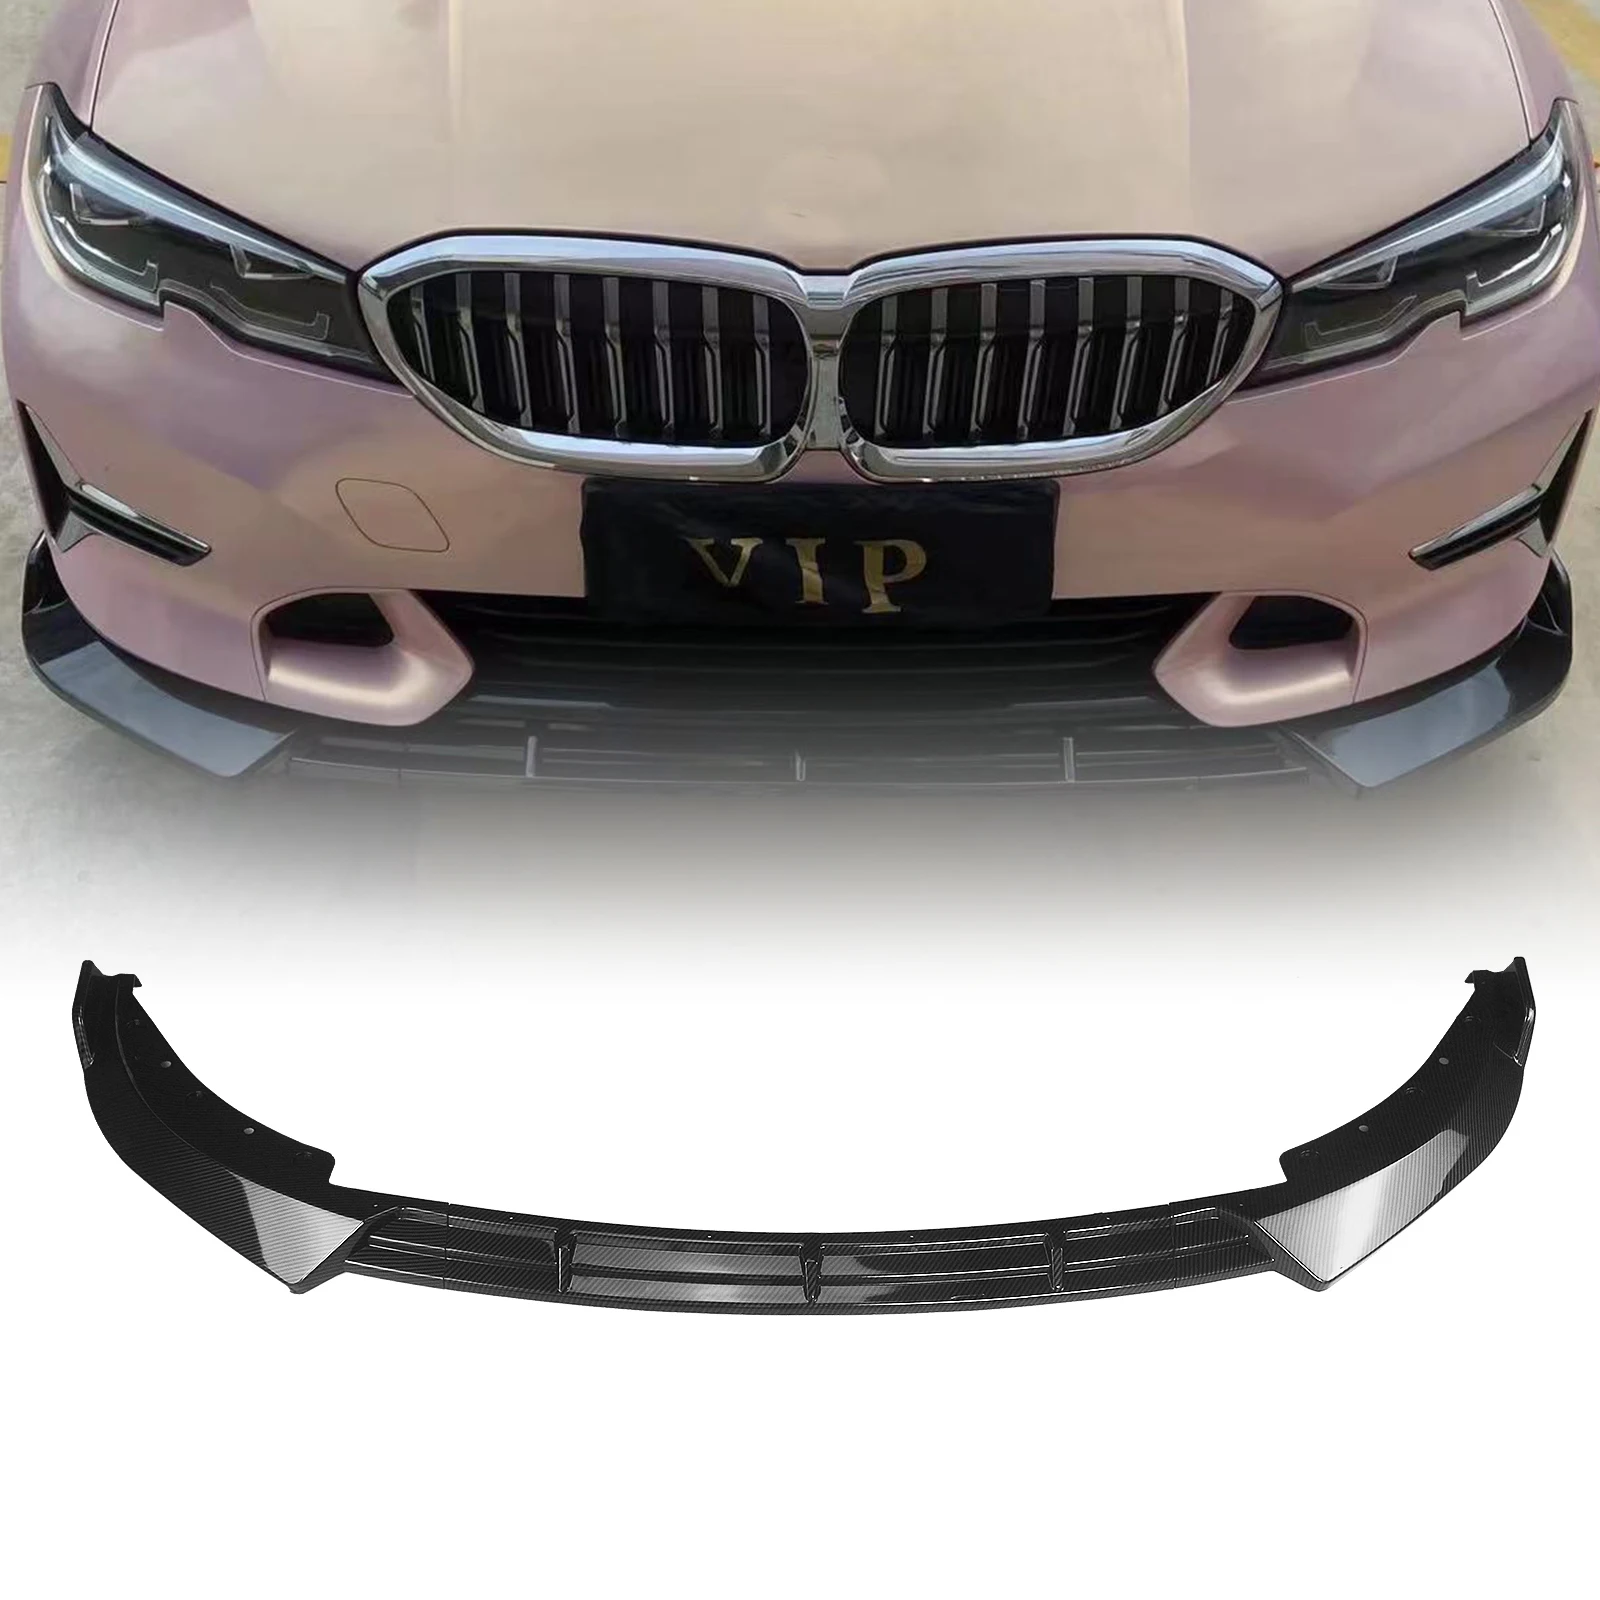 

Передний спойлер губа для BMW 3-серии G20 G21 2019-2021 спортивный бампер только АБС углеродное волокно вид кузова Комплект сплиттер лезвие